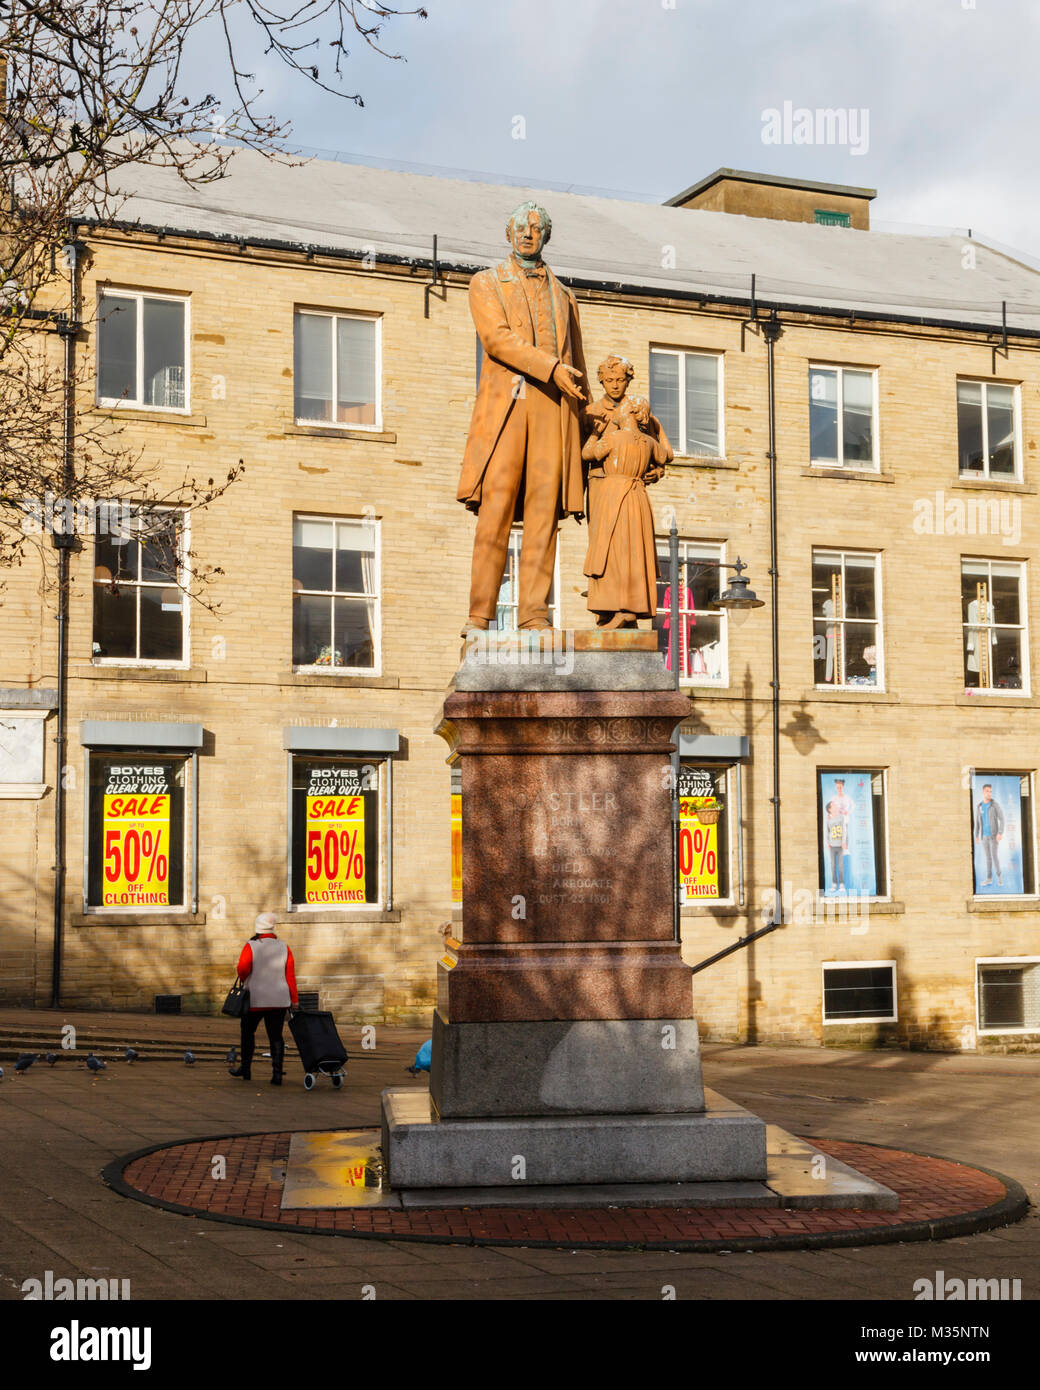 Oastler Square, Bradford, West Yorkshire, UK Stock Photo